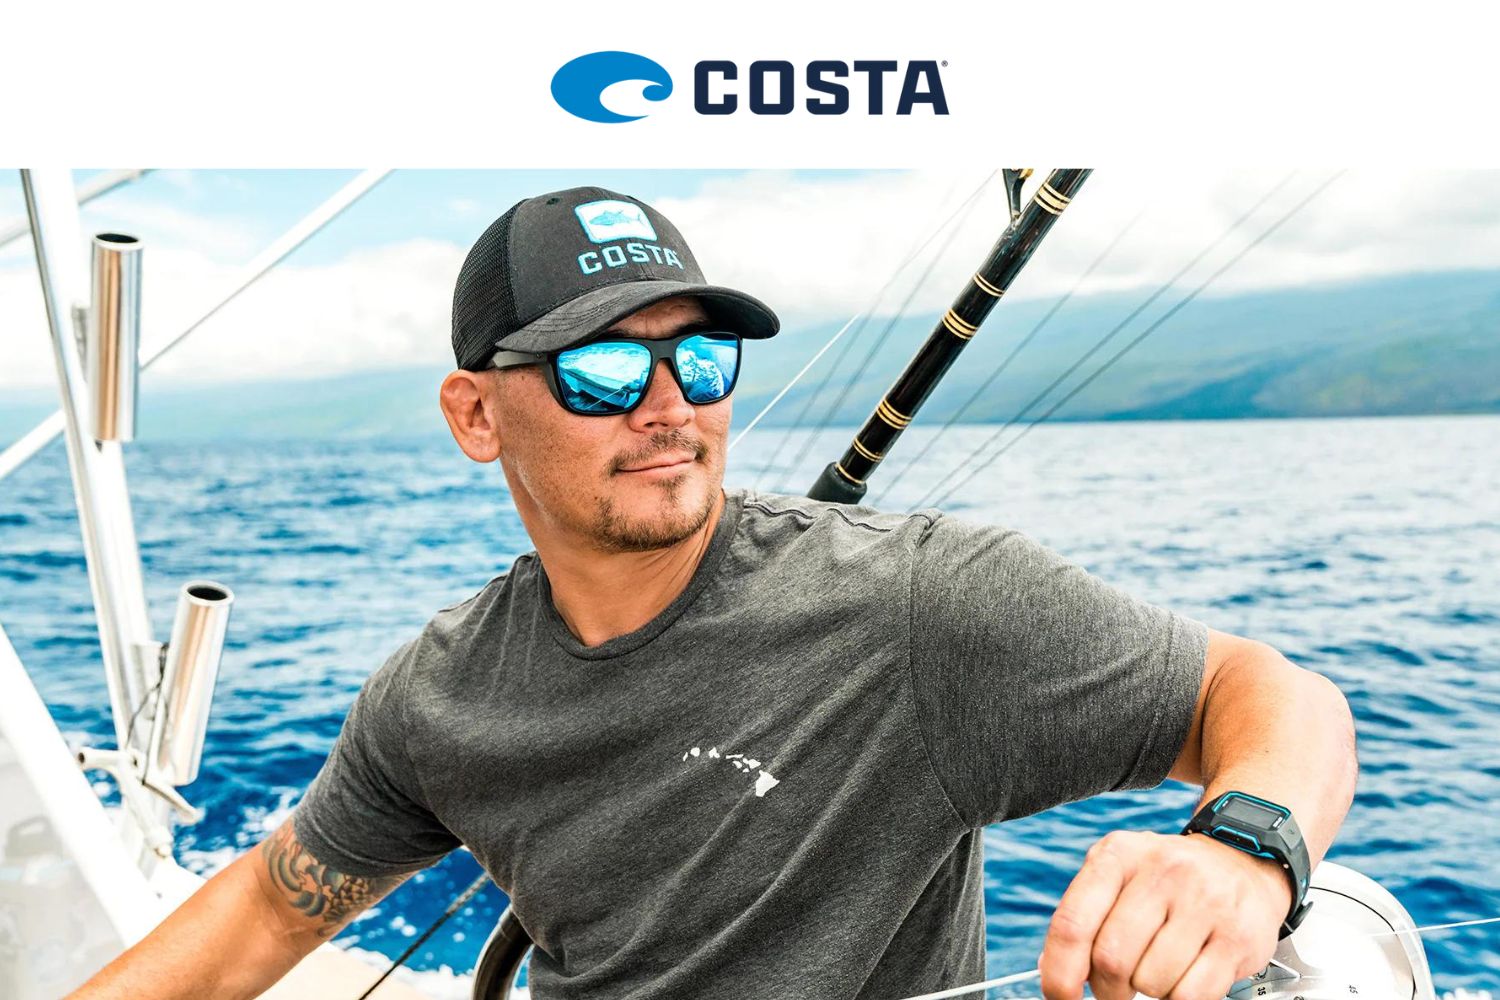 Costa Del Mar Fishing Sunglasses in Fishing Clothing